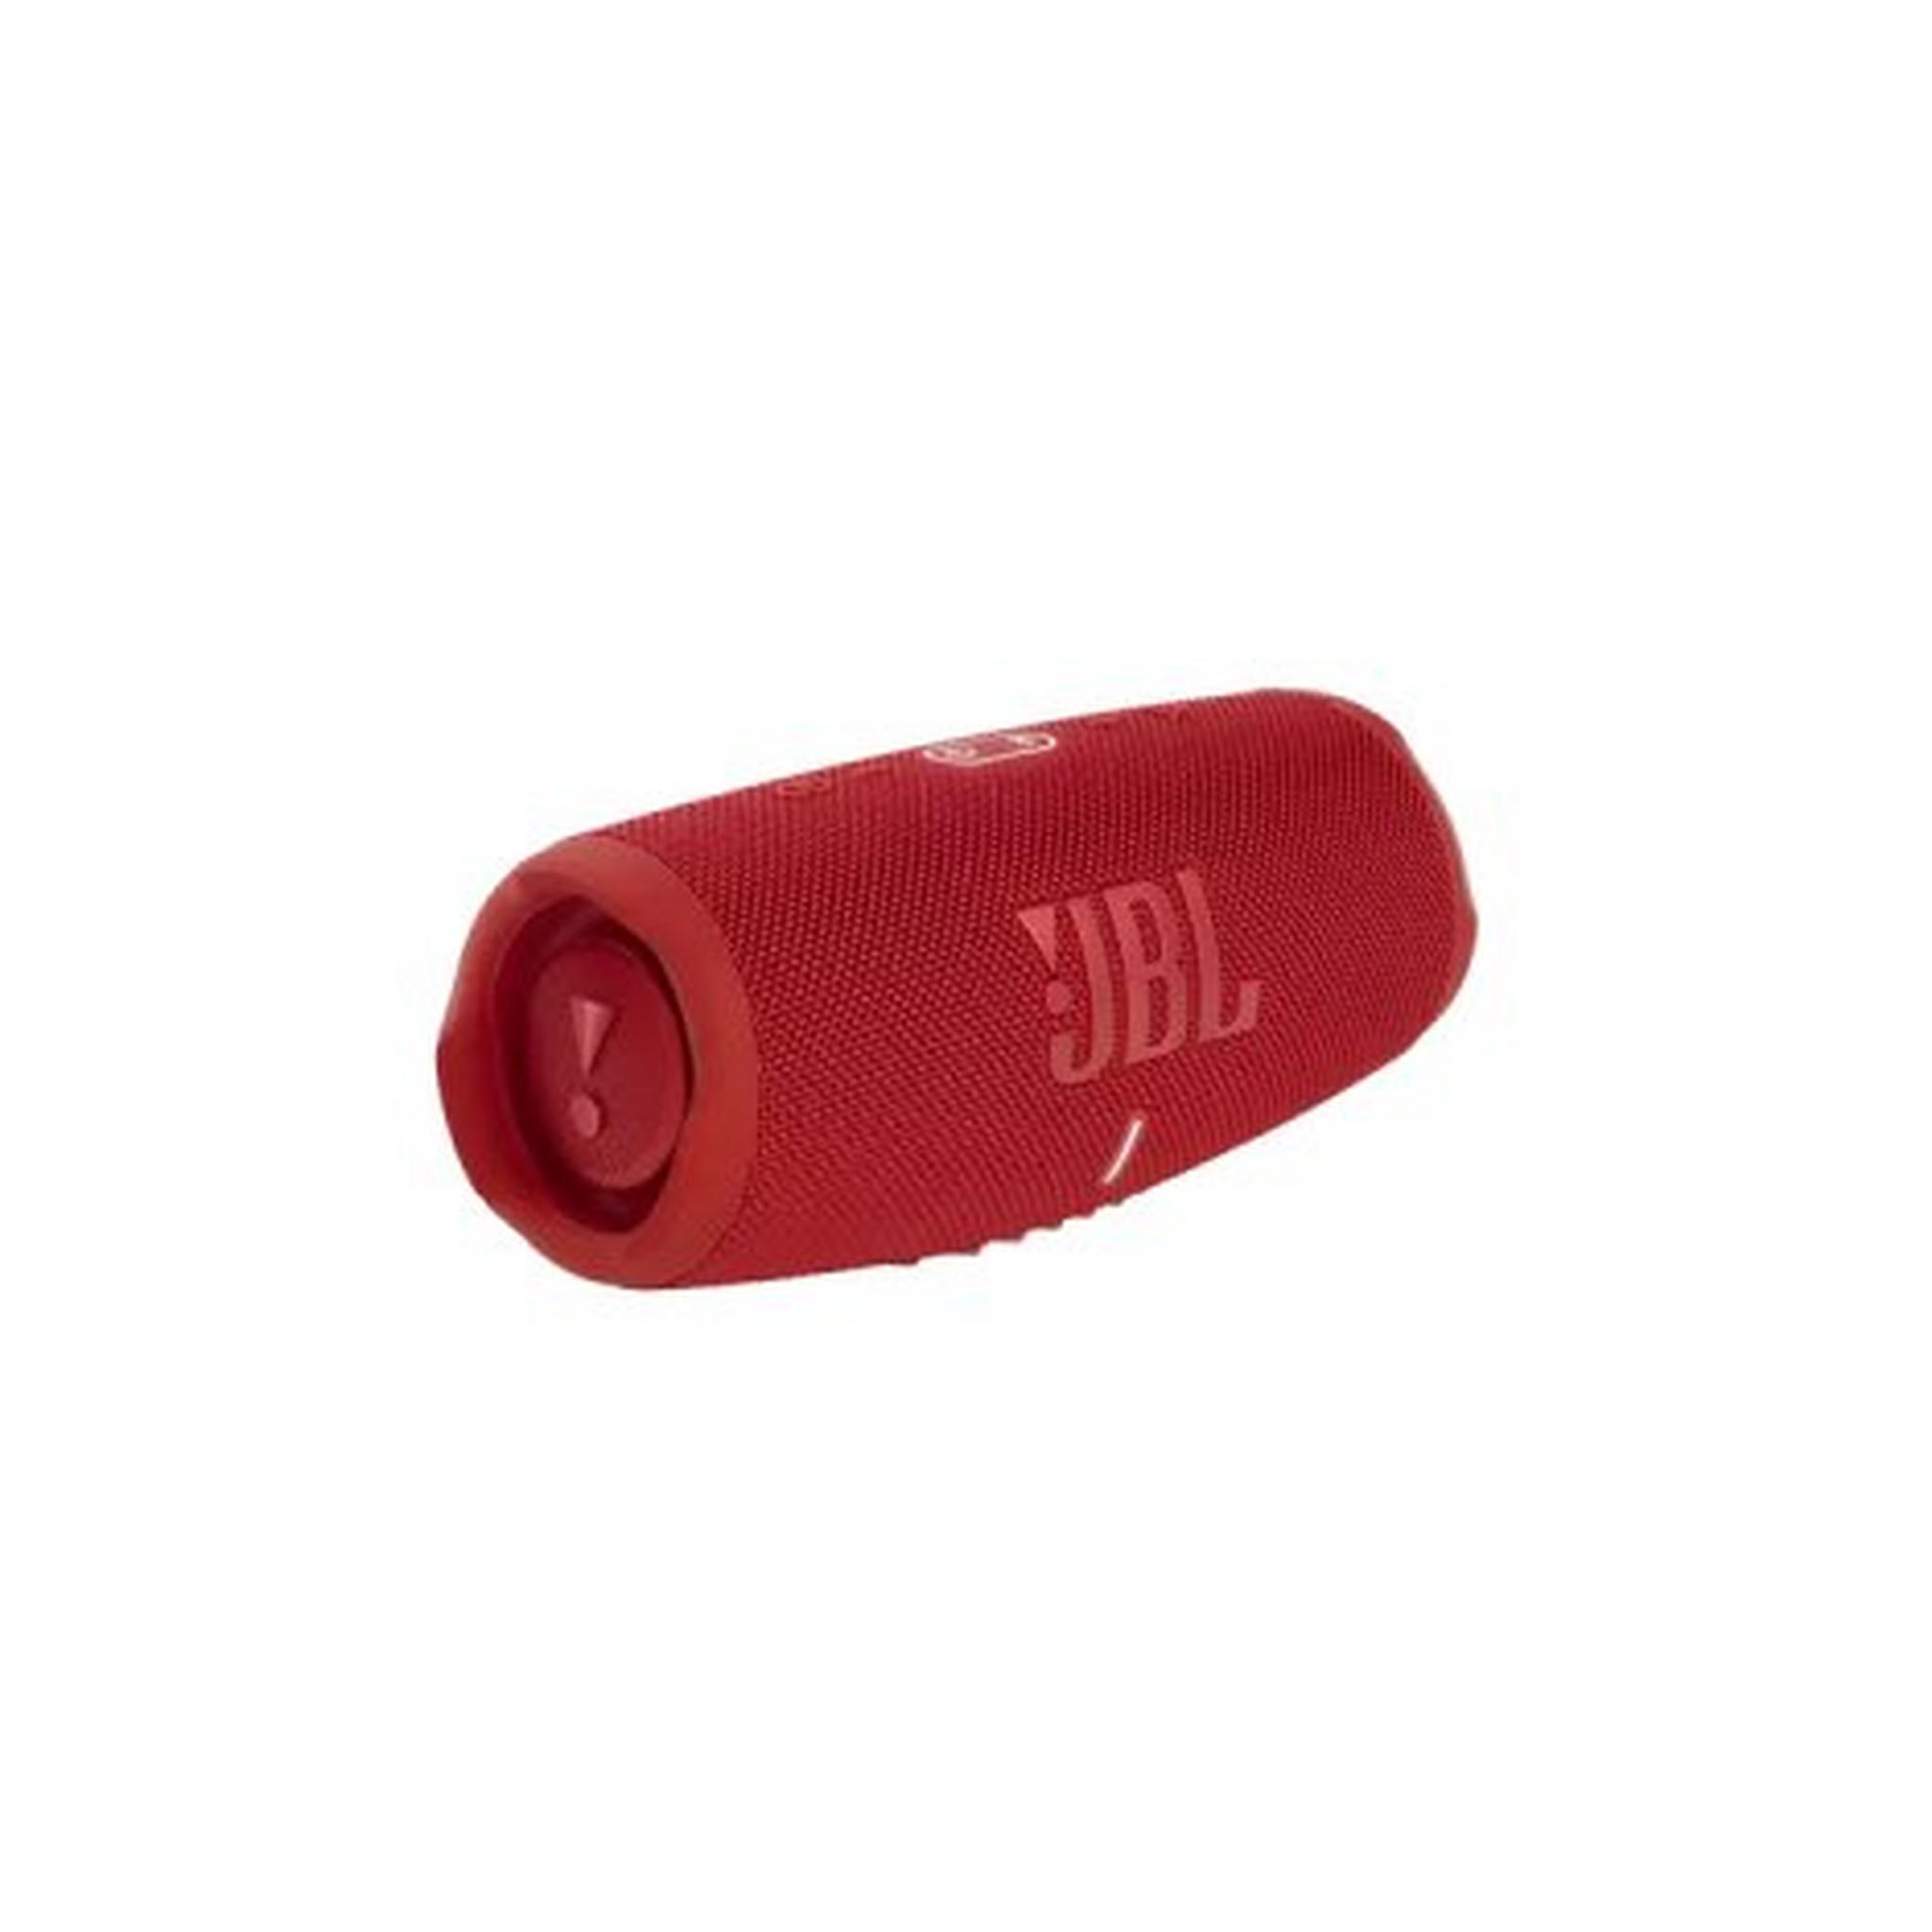 مكبر الصوت تشارج 5 لاسلكي مقاوم للماء من جي بي إل، JBLCHARGE5RED - أحمر